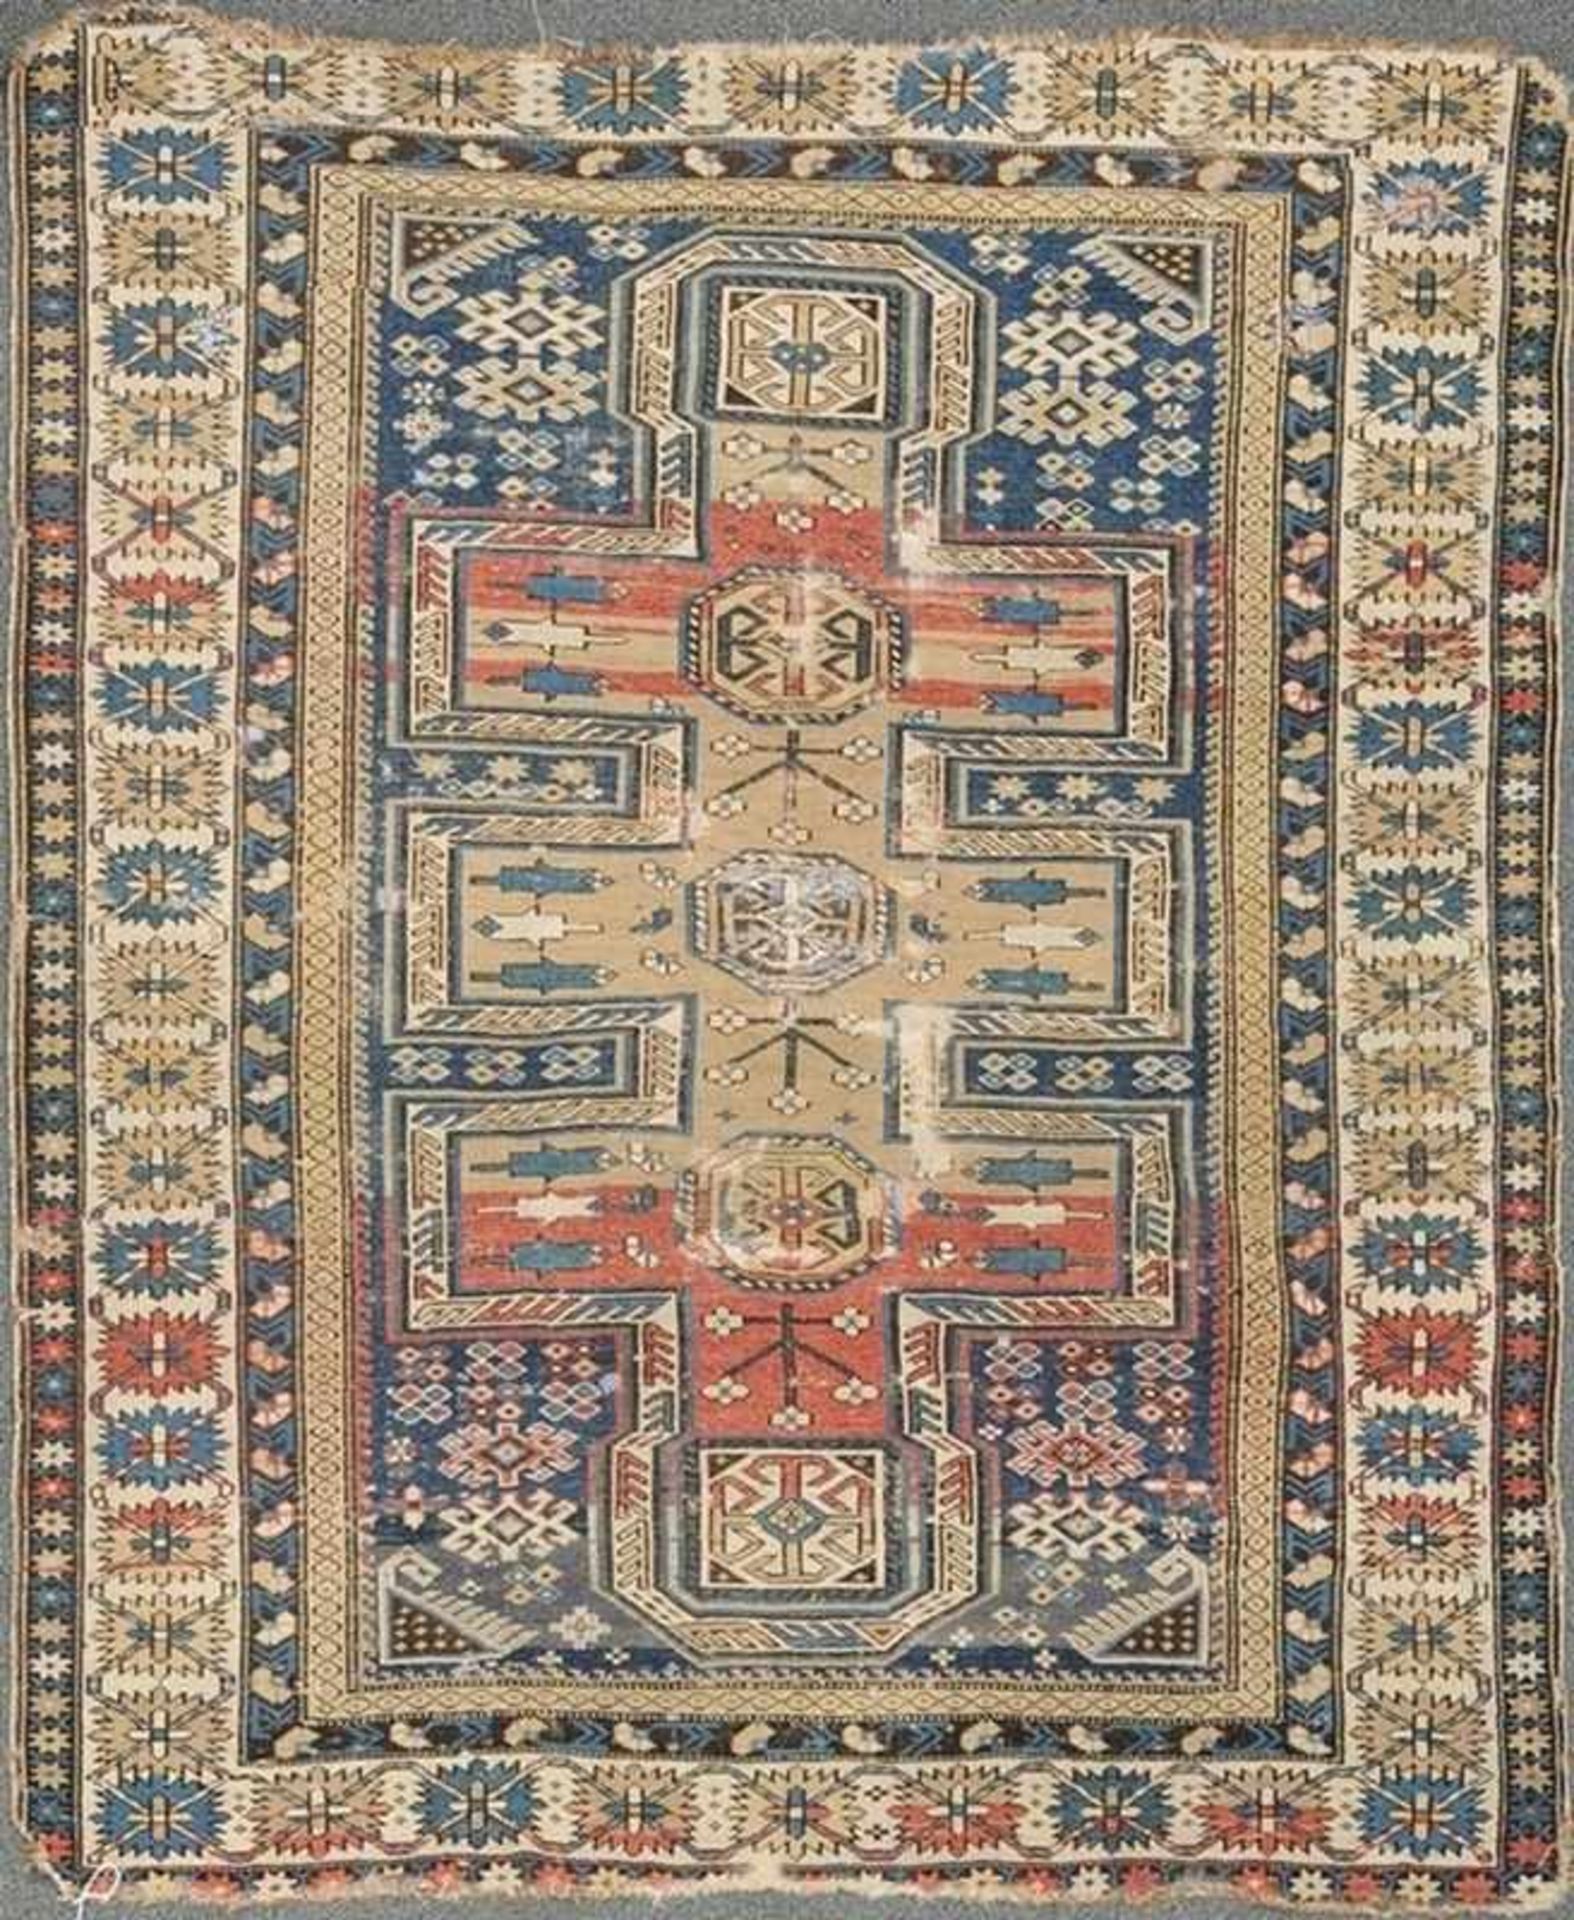 Historischer SchirwanWolle/Wolle. Sumakh. Polychromer Ornamentaldekor in Blau, Braun, Rot, Naturweiß